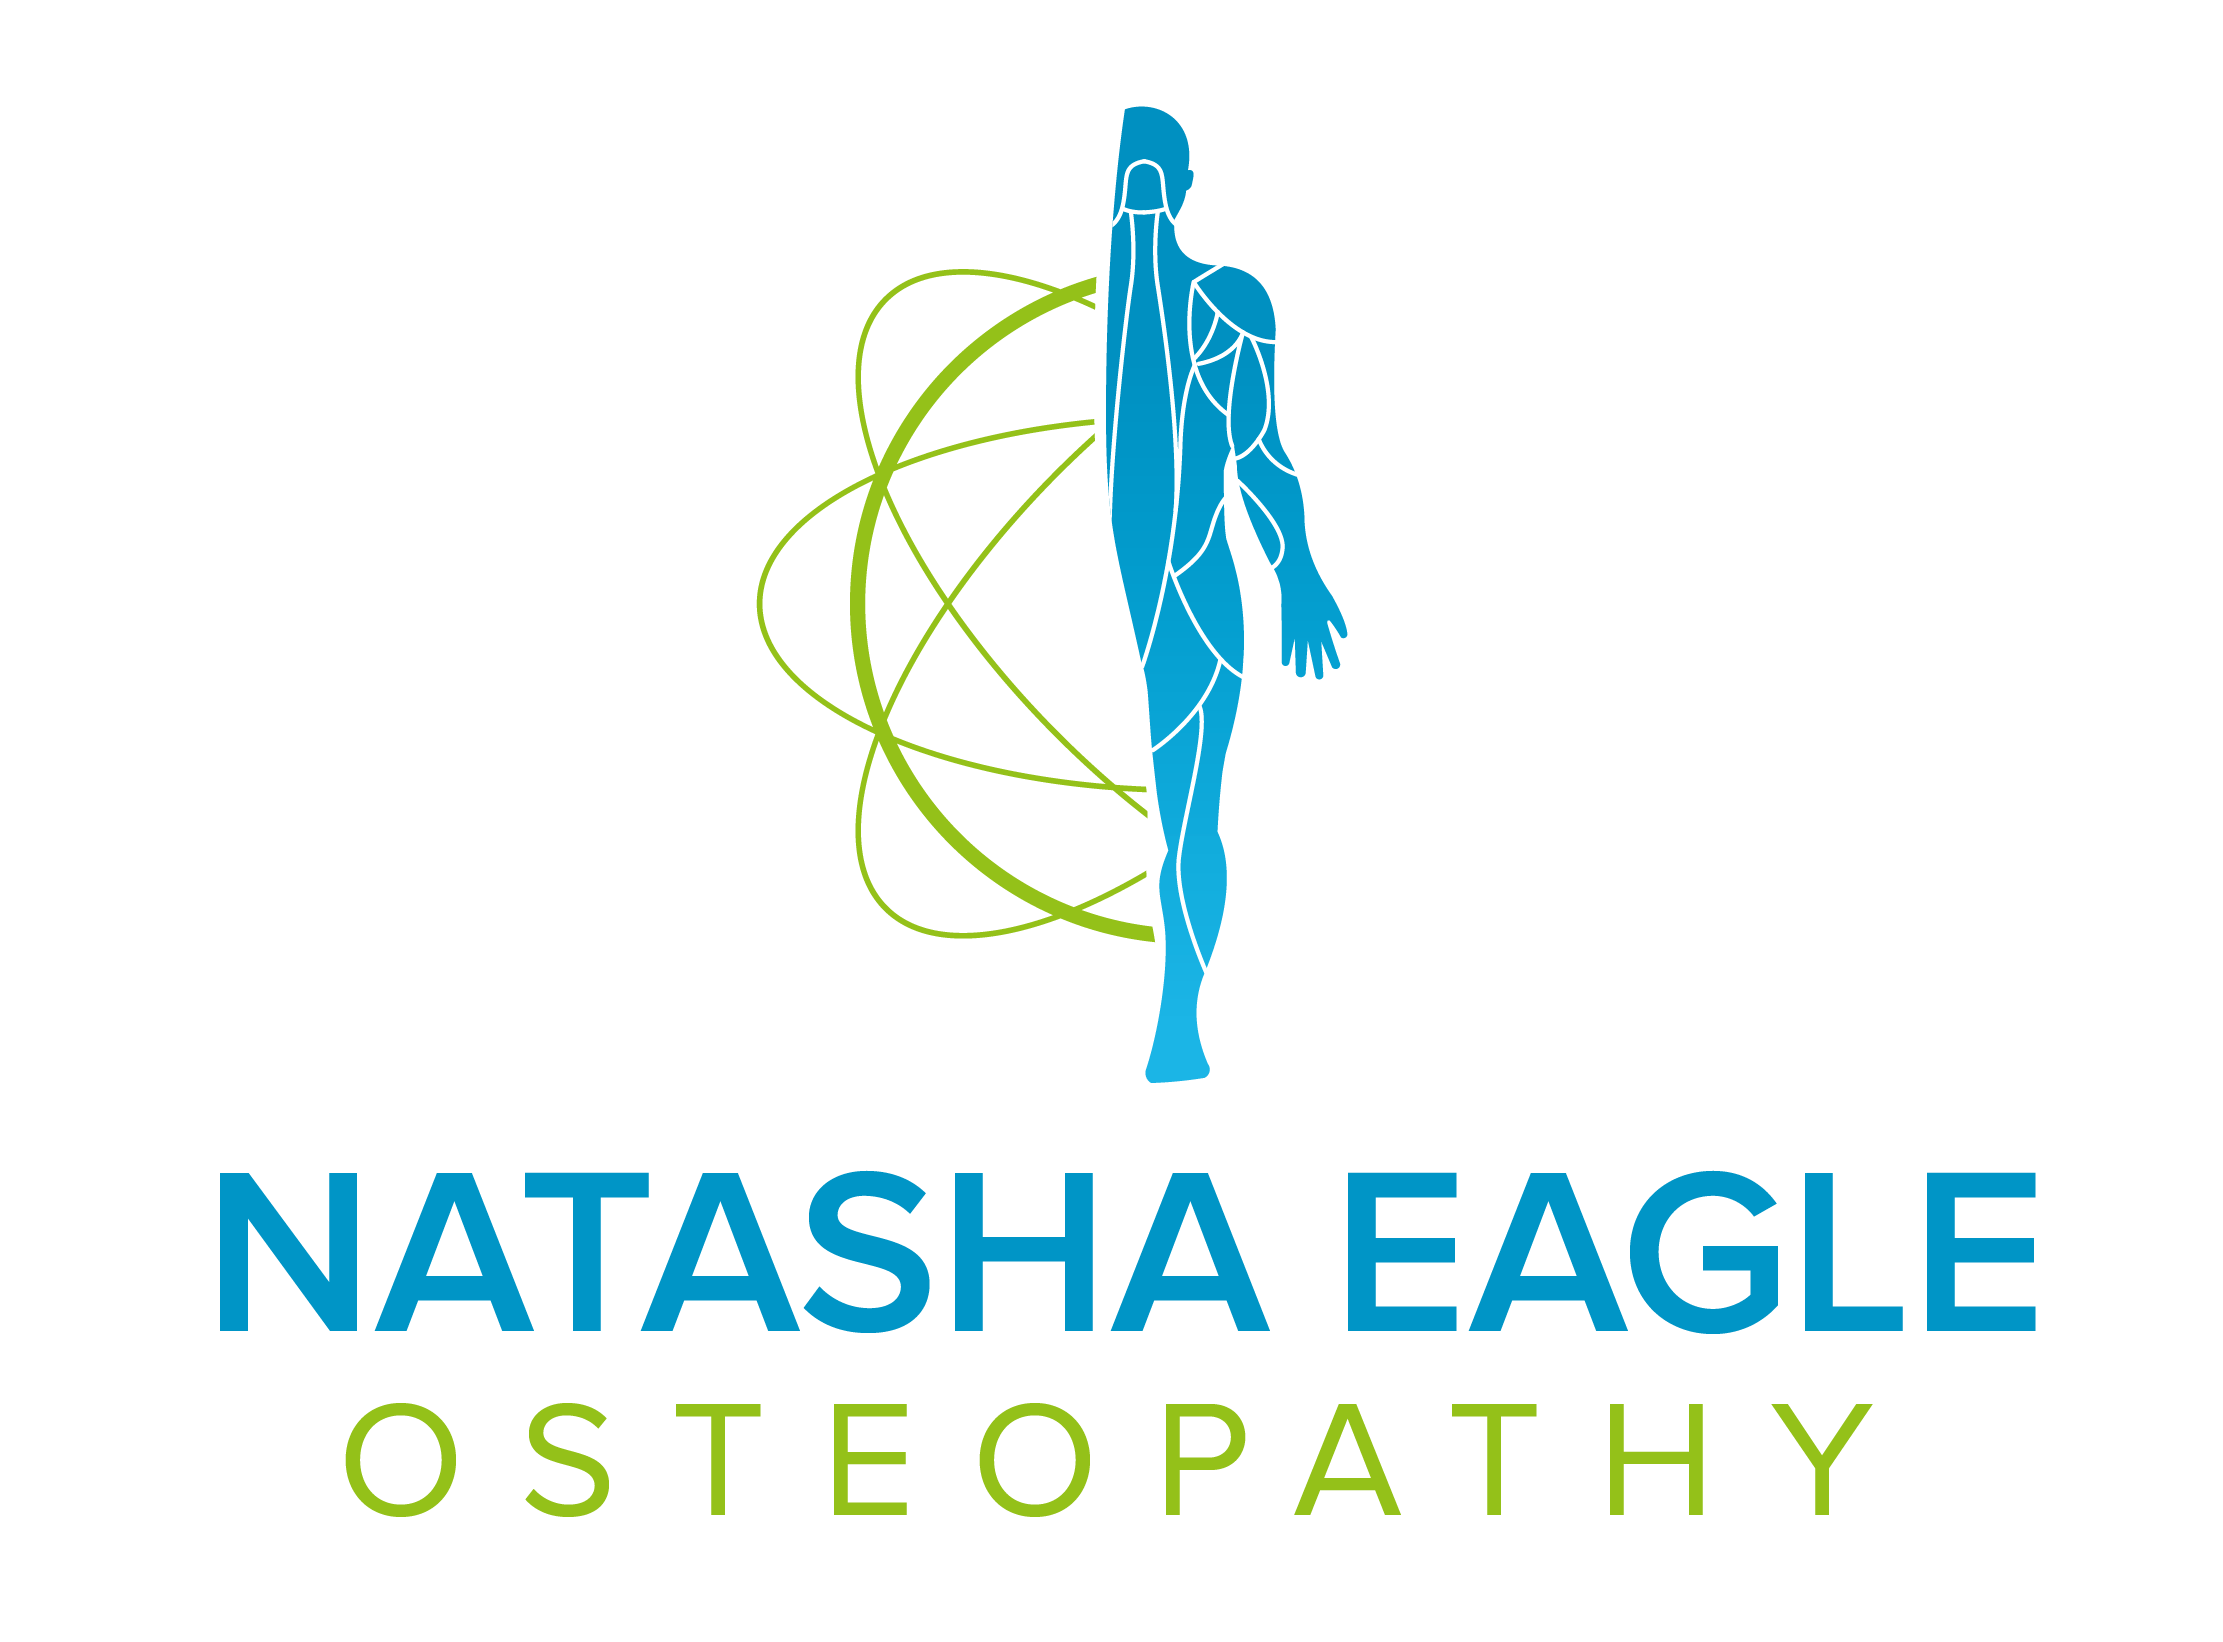 Natasha Eagle Osteopath M.Ost, N.D